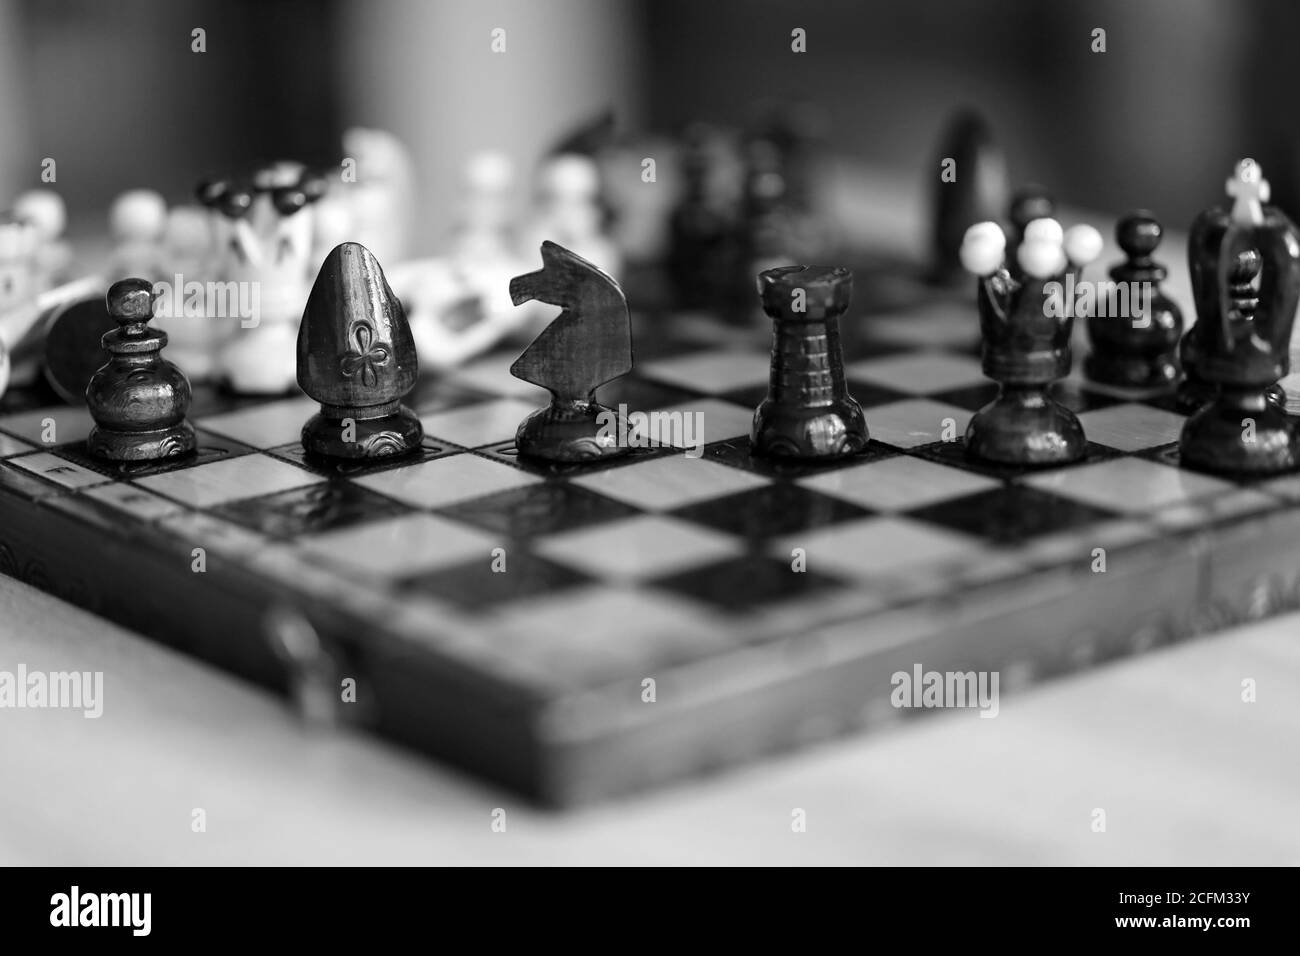 Piezas de ajedrez en tablero de madera de color blanco y negro. Las piezas  incluyen el peón, el rey, la reina, el obispo, el caballero, y la torre  Fotografía de stock -